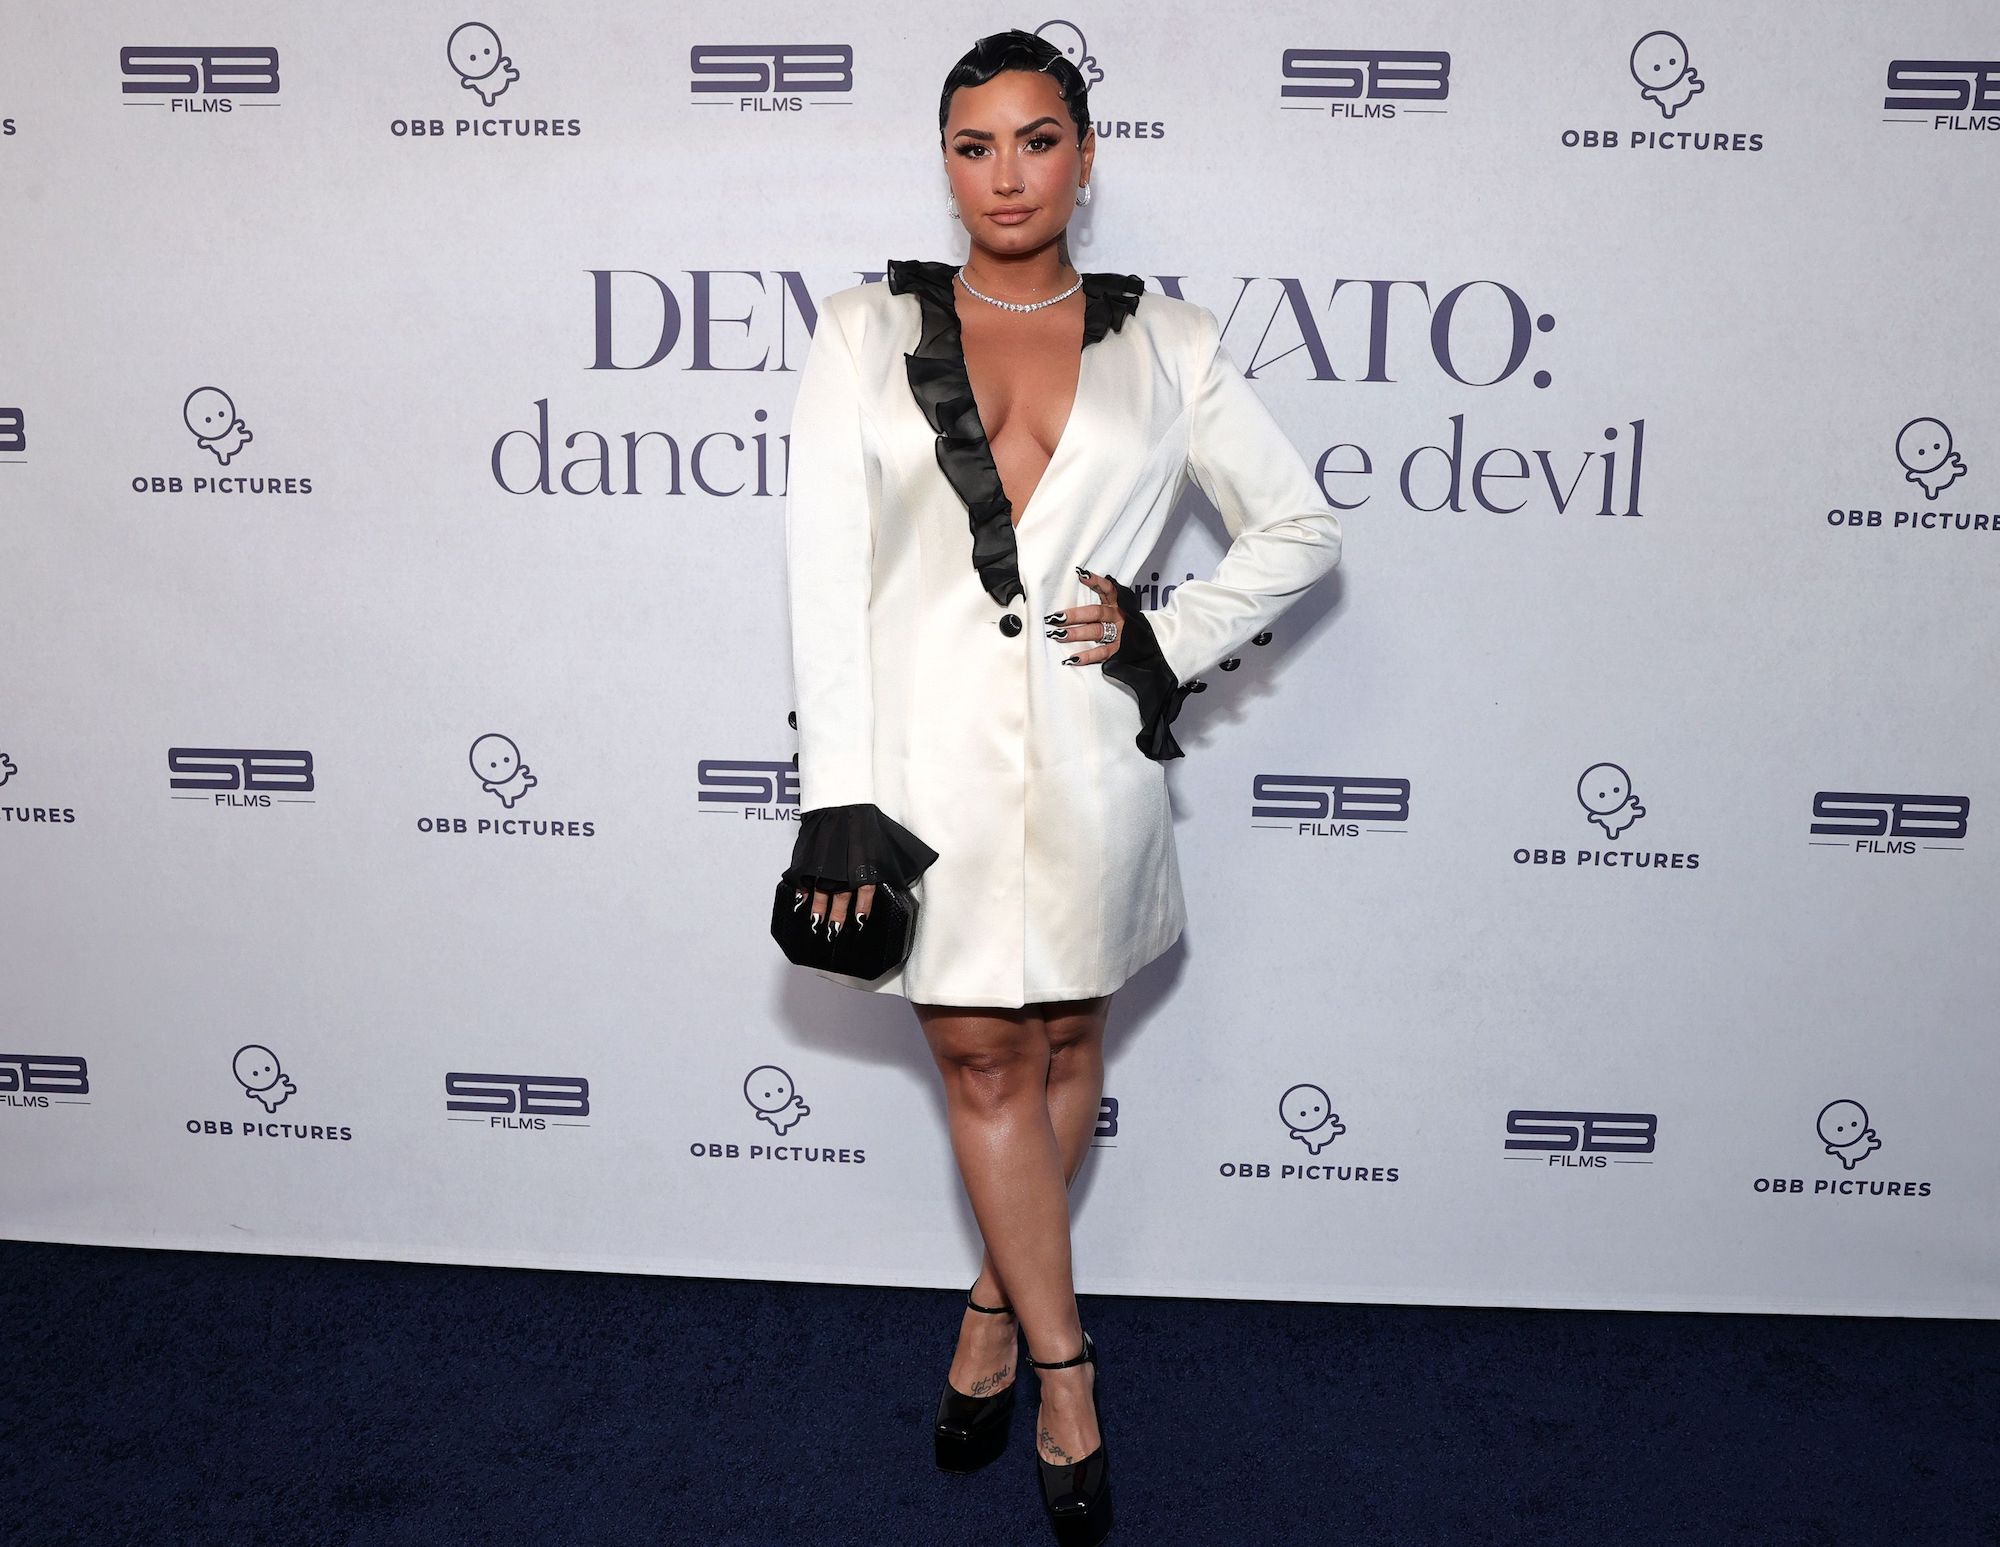 Demi Lovato at the OBB Premiere Event For YouTube Originals Docuseries "Demi Lovato: Dancing With The Devil" 